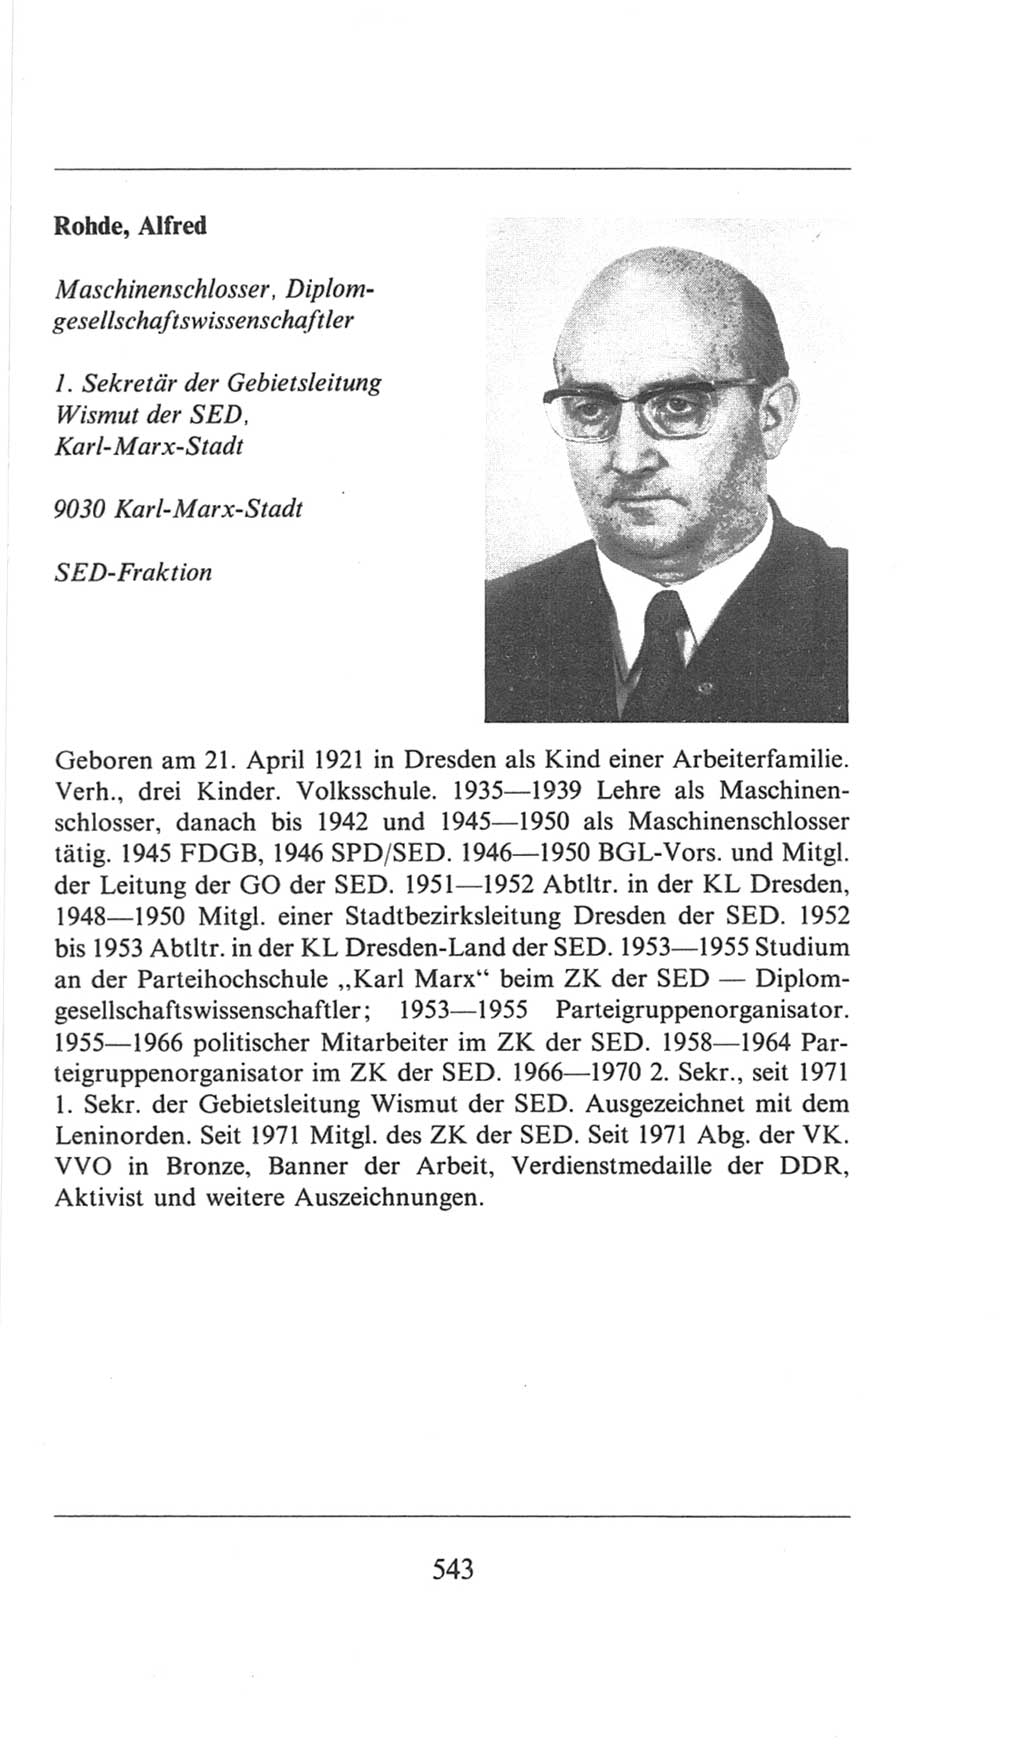 Volkskammer (VK) der Deutschen Demokratischen Republik (DDR), 6. Wahlperiode 1971-1976, Seite 543 (VK. DDR 6. WP. 1971-1976, S. 543)